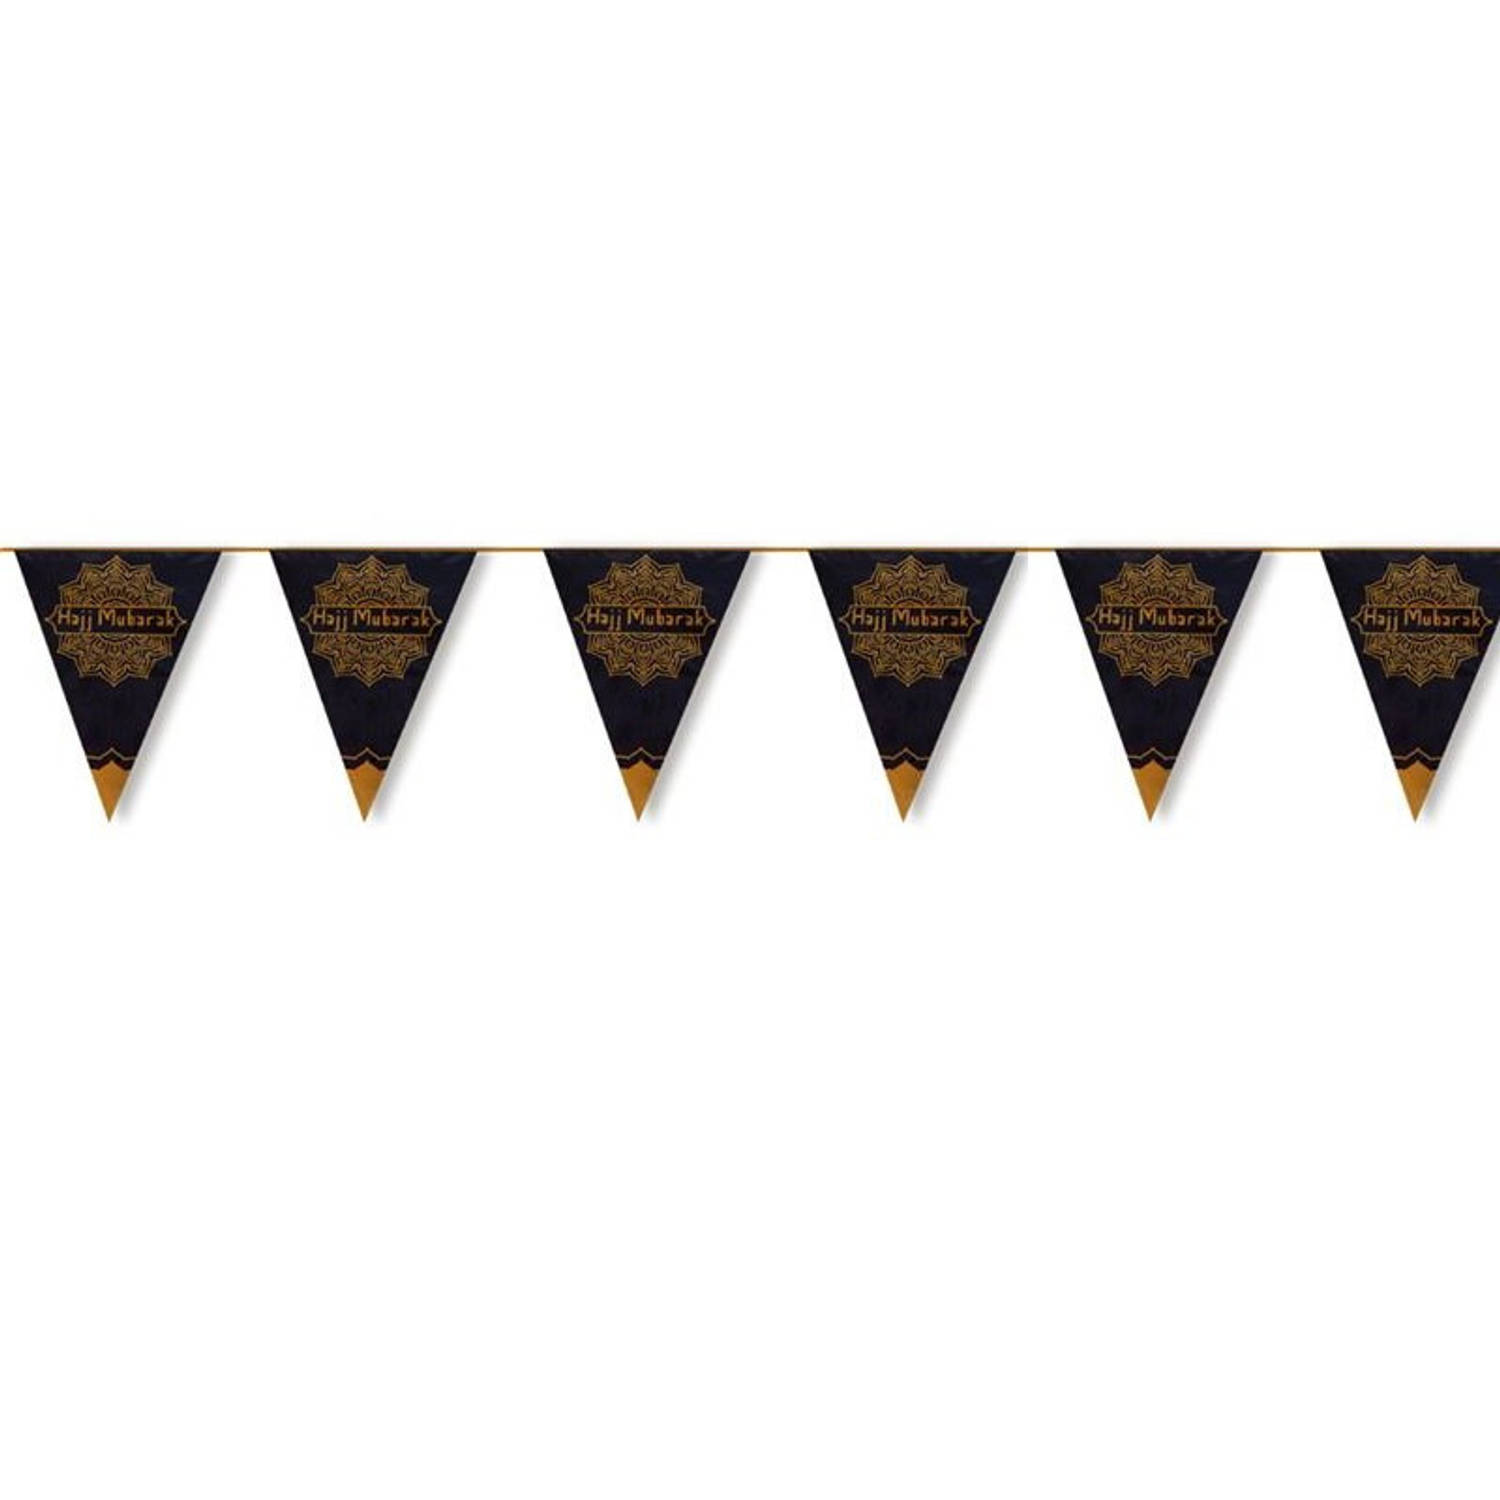 Ramadan Mubarak thema vlaggenlijn/slinger zwart/goud 6 meter - Suikerfeest/Offerfeest versieringen/decoraties